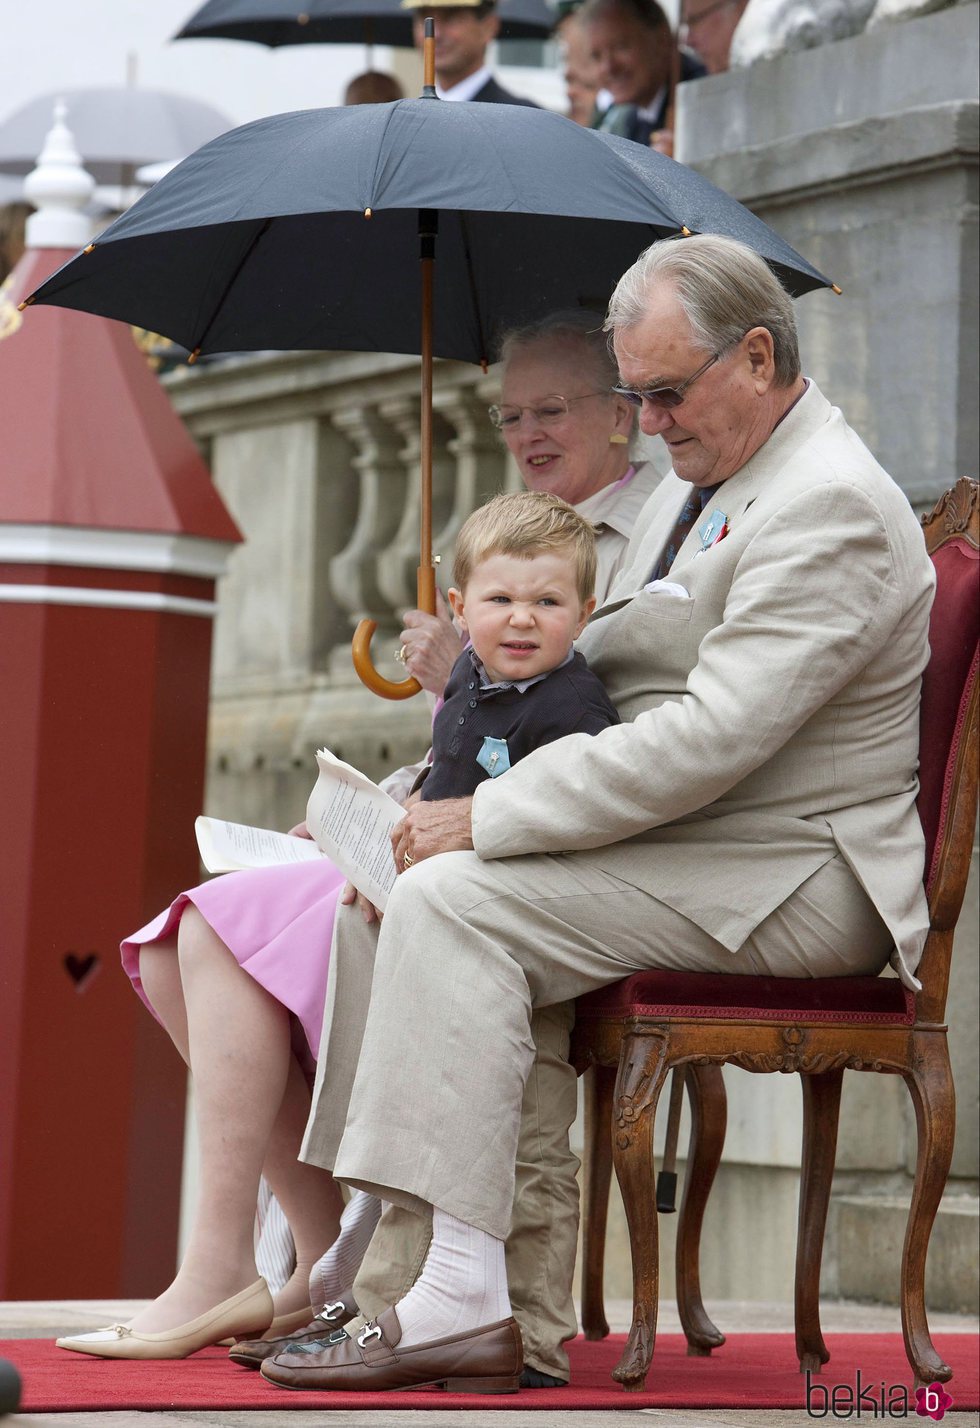 Enrique de Dinamarca con la Reina Margarita y el Príncipe Christian en su 75 cumpleaños